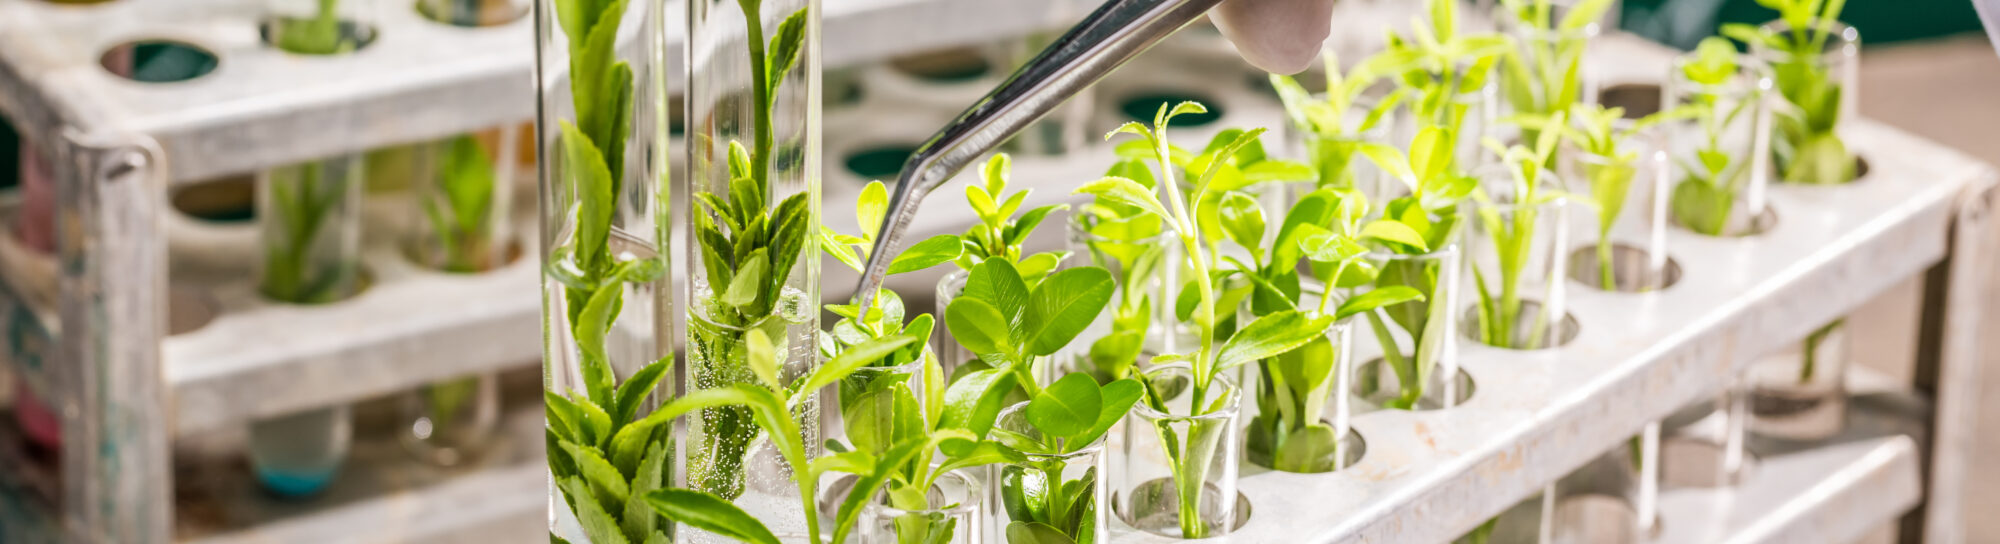 Braucht die Welt überhaupt genomeditierte Pflanzen?